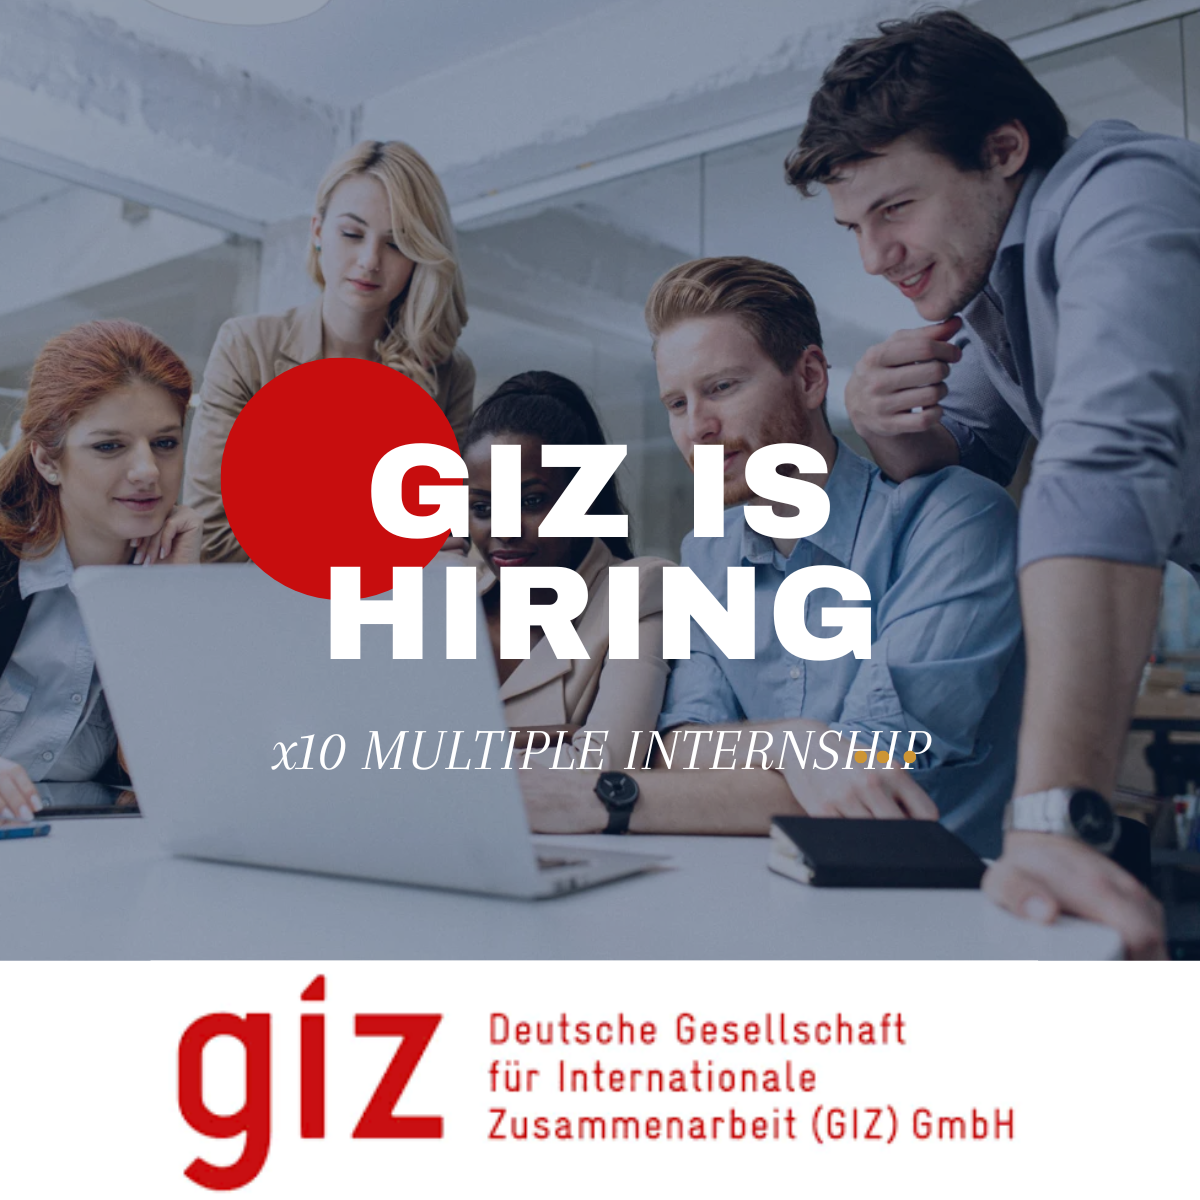 Ten internship openings are currently available at Deutsche Gesellschaft für Internationale Zusammenarbeit (GIZ). Don't miss out, apply now.